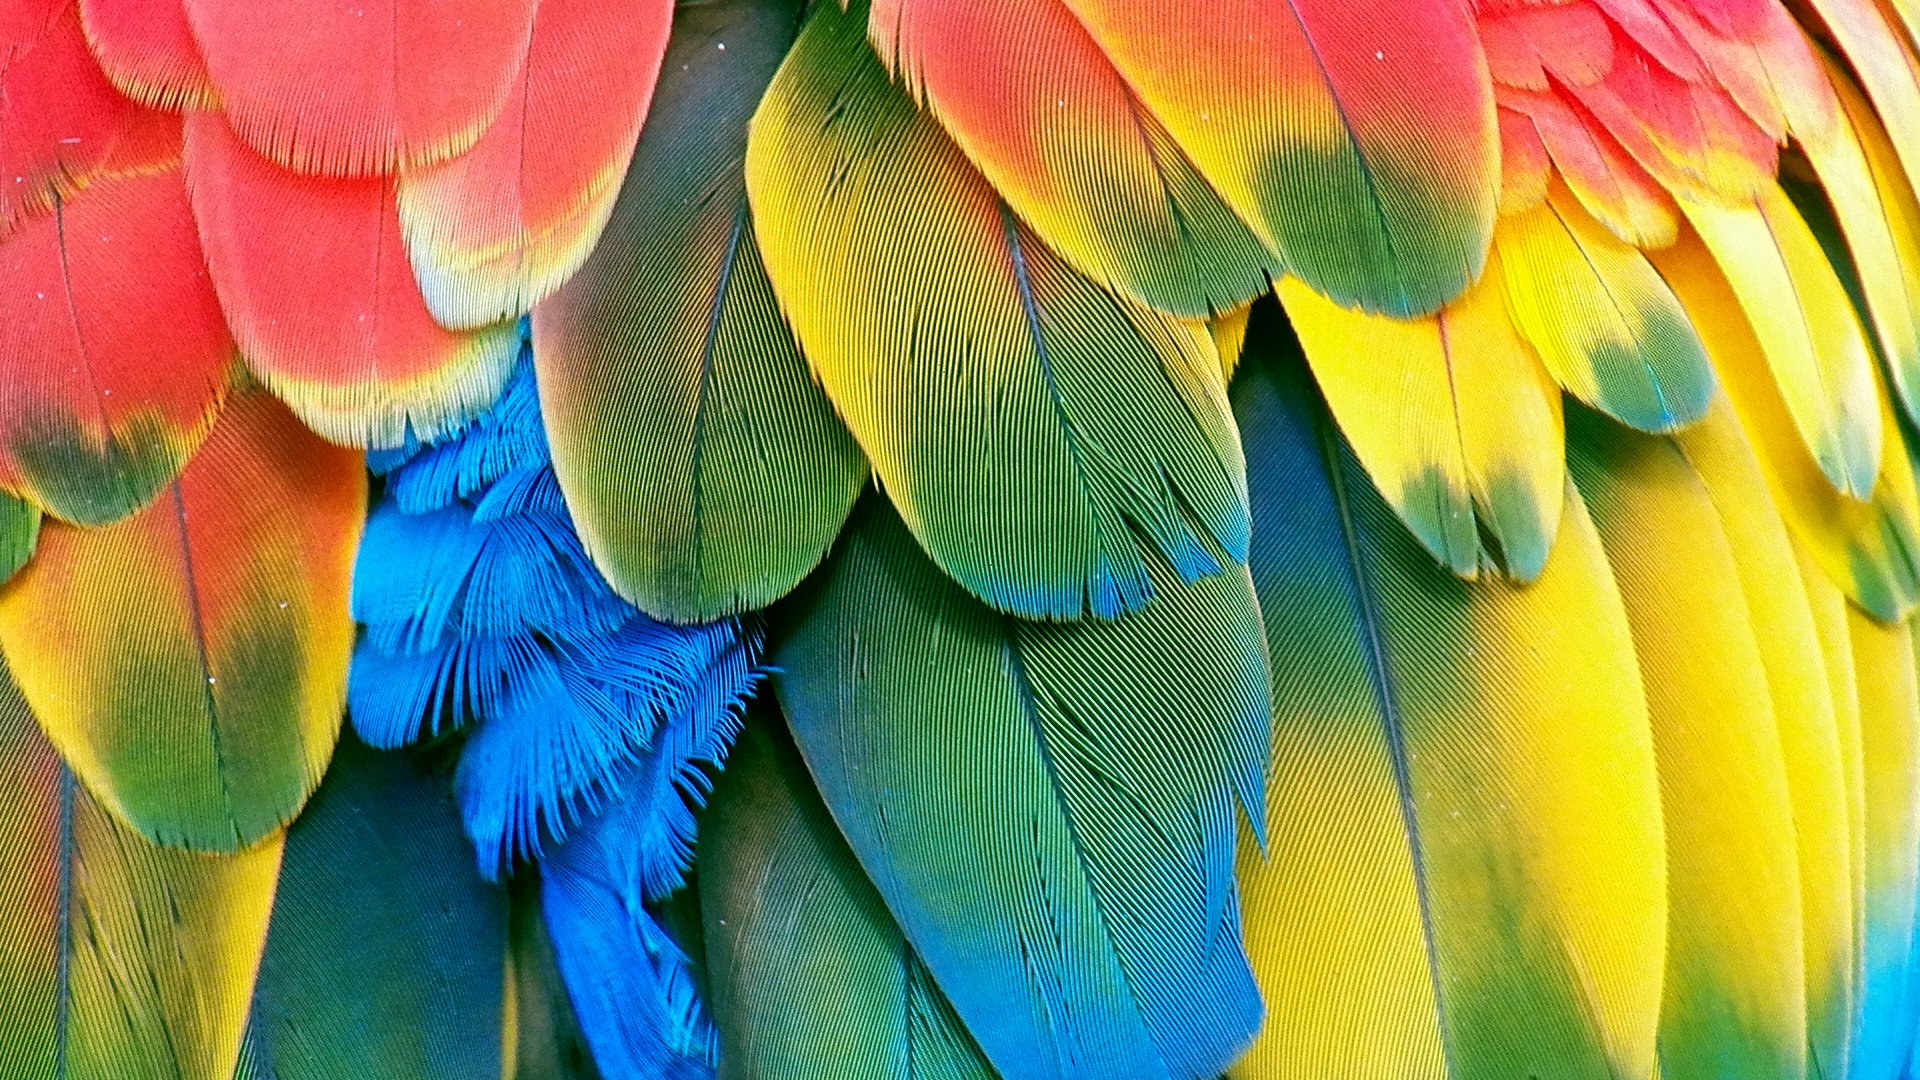 68+] Macaw Parrot Wallpaper - WallpaperSafari